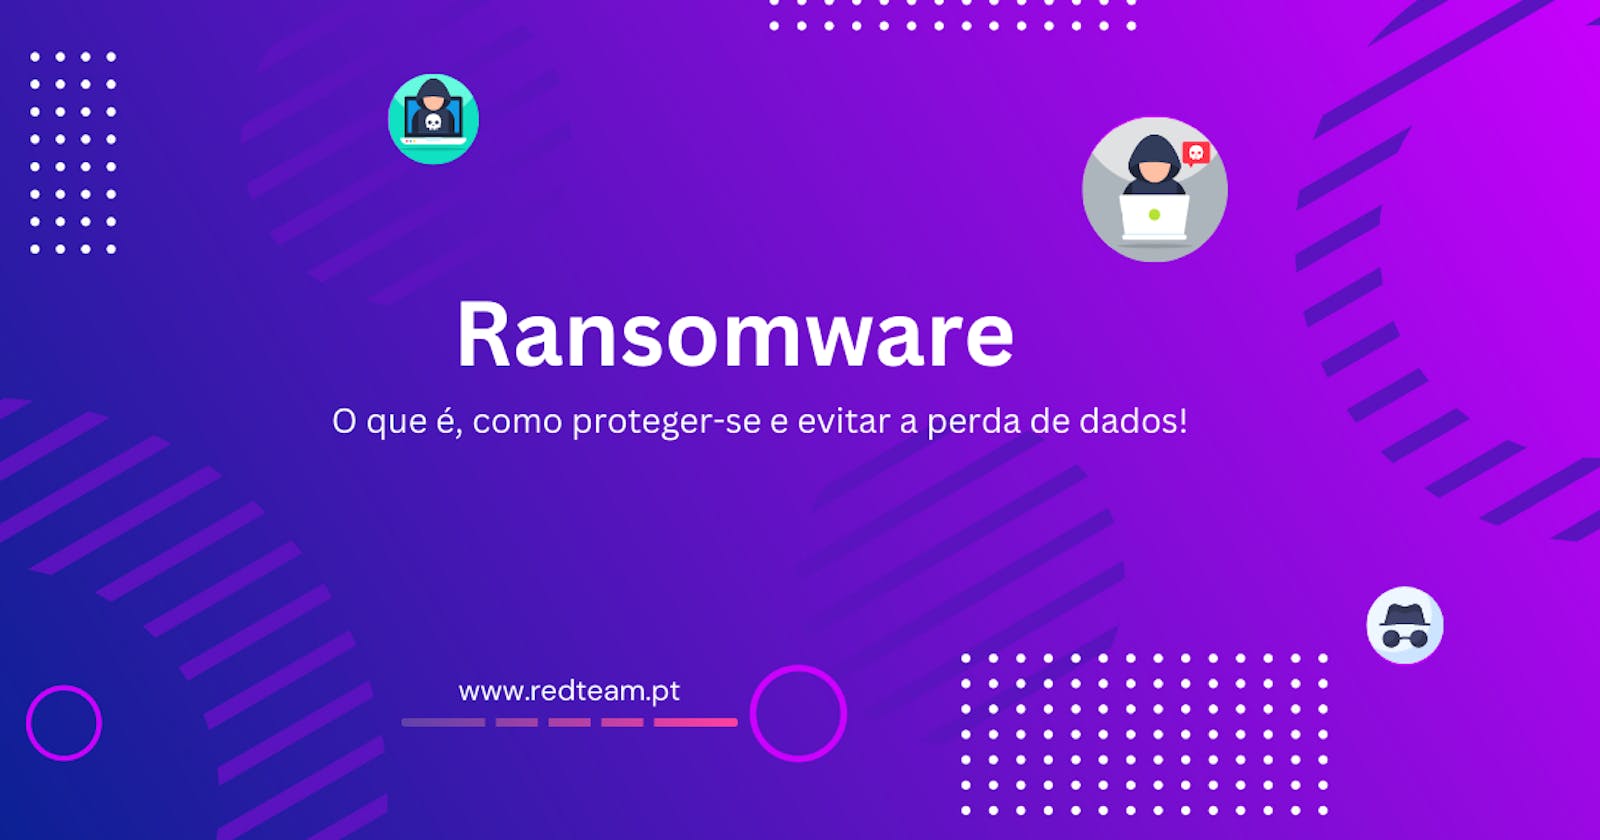 Ransomware: O que é, como proteger-se e evitar a perda de dados!